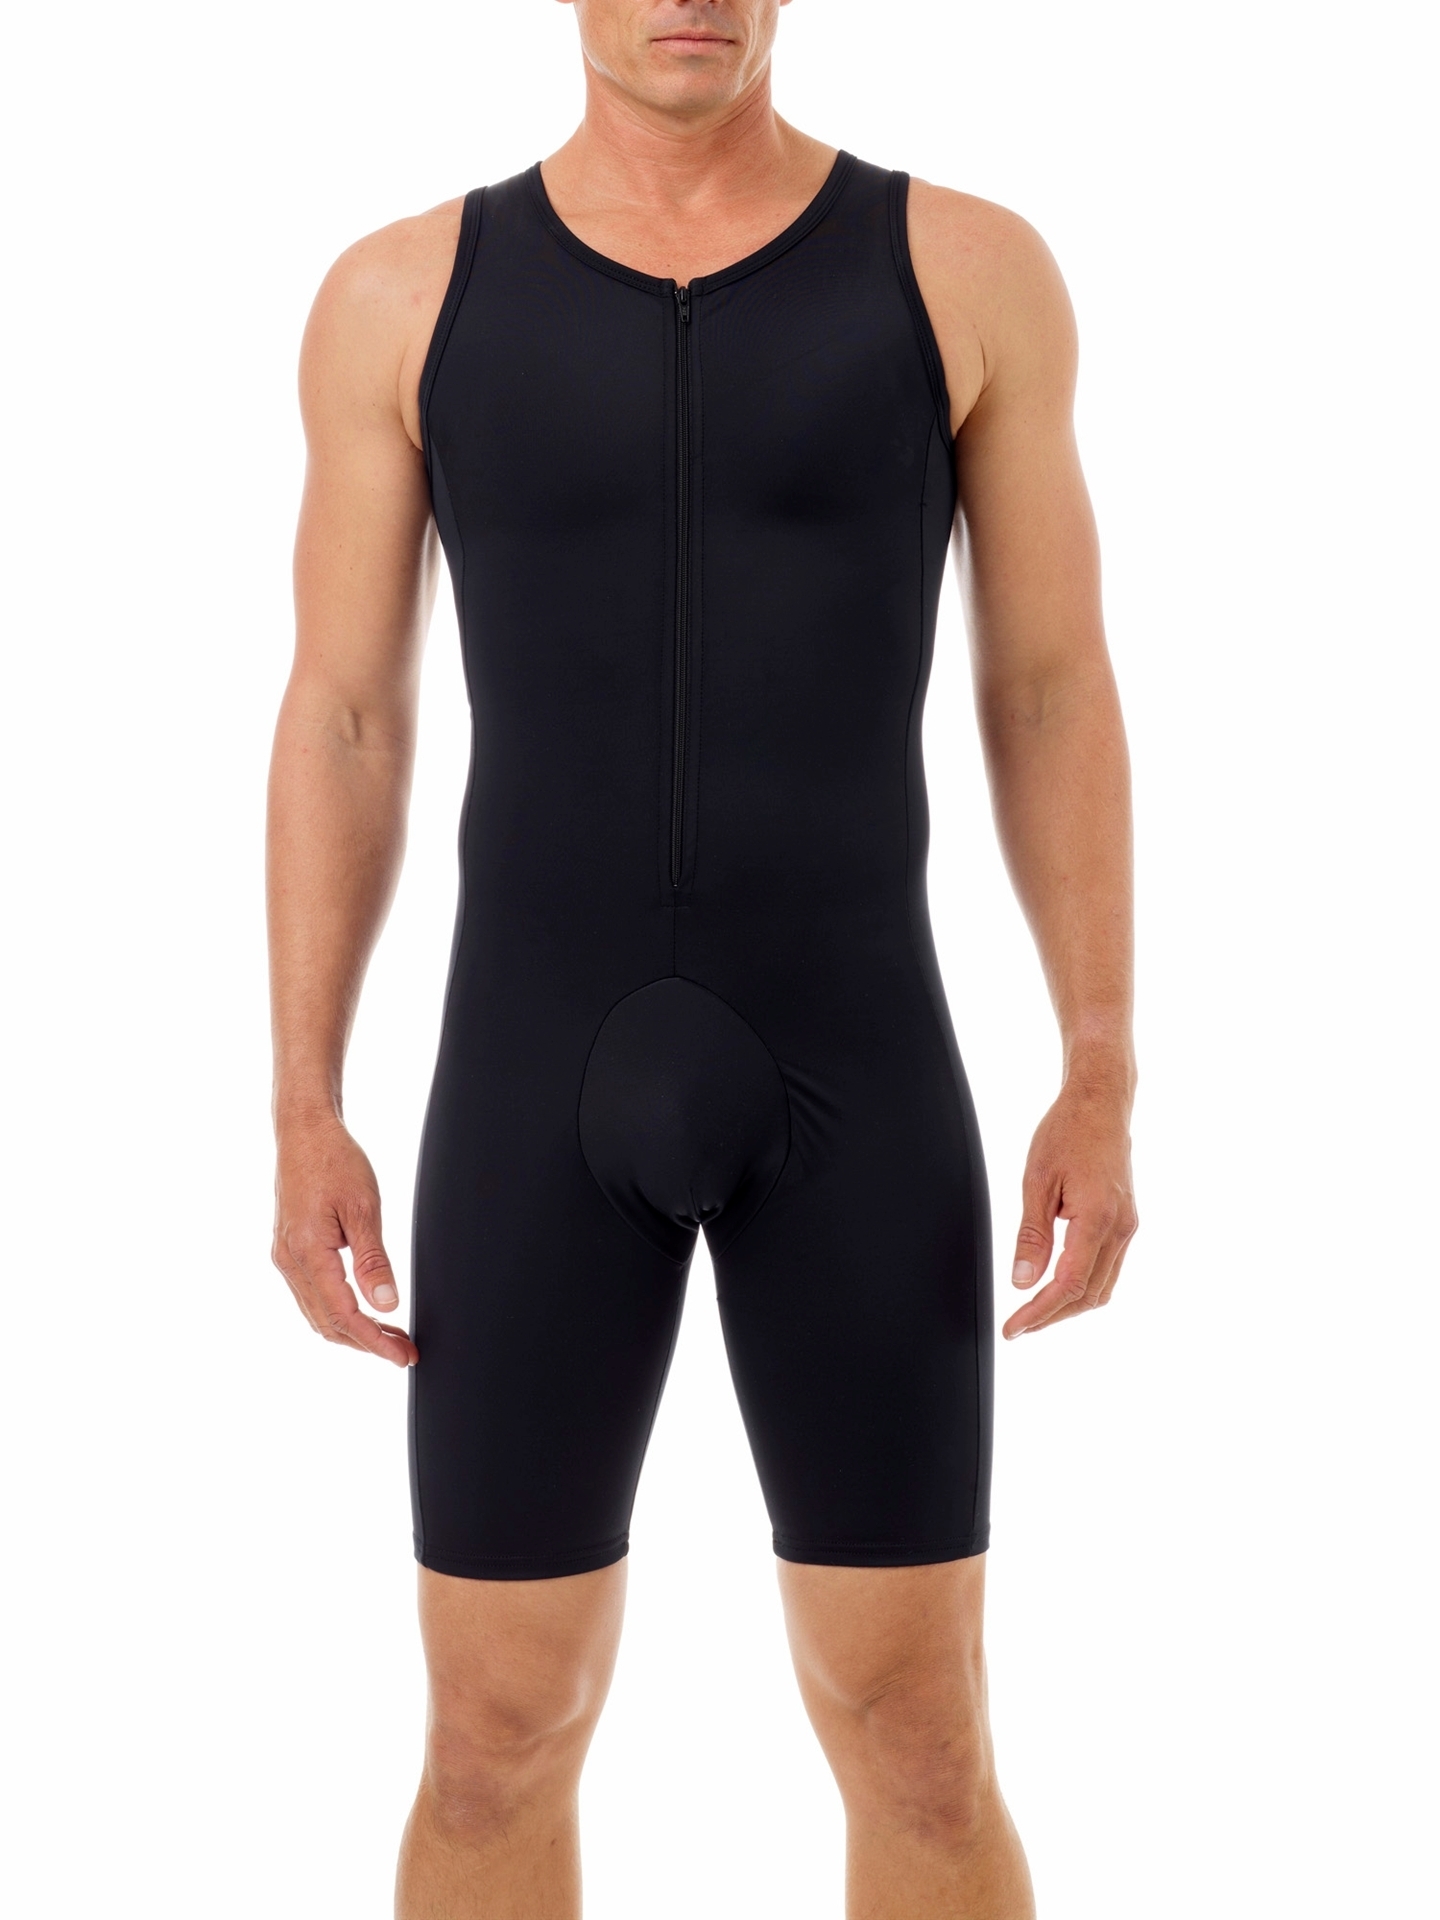 Underworks Mens Concealer Compression Swimsuit - Black - S